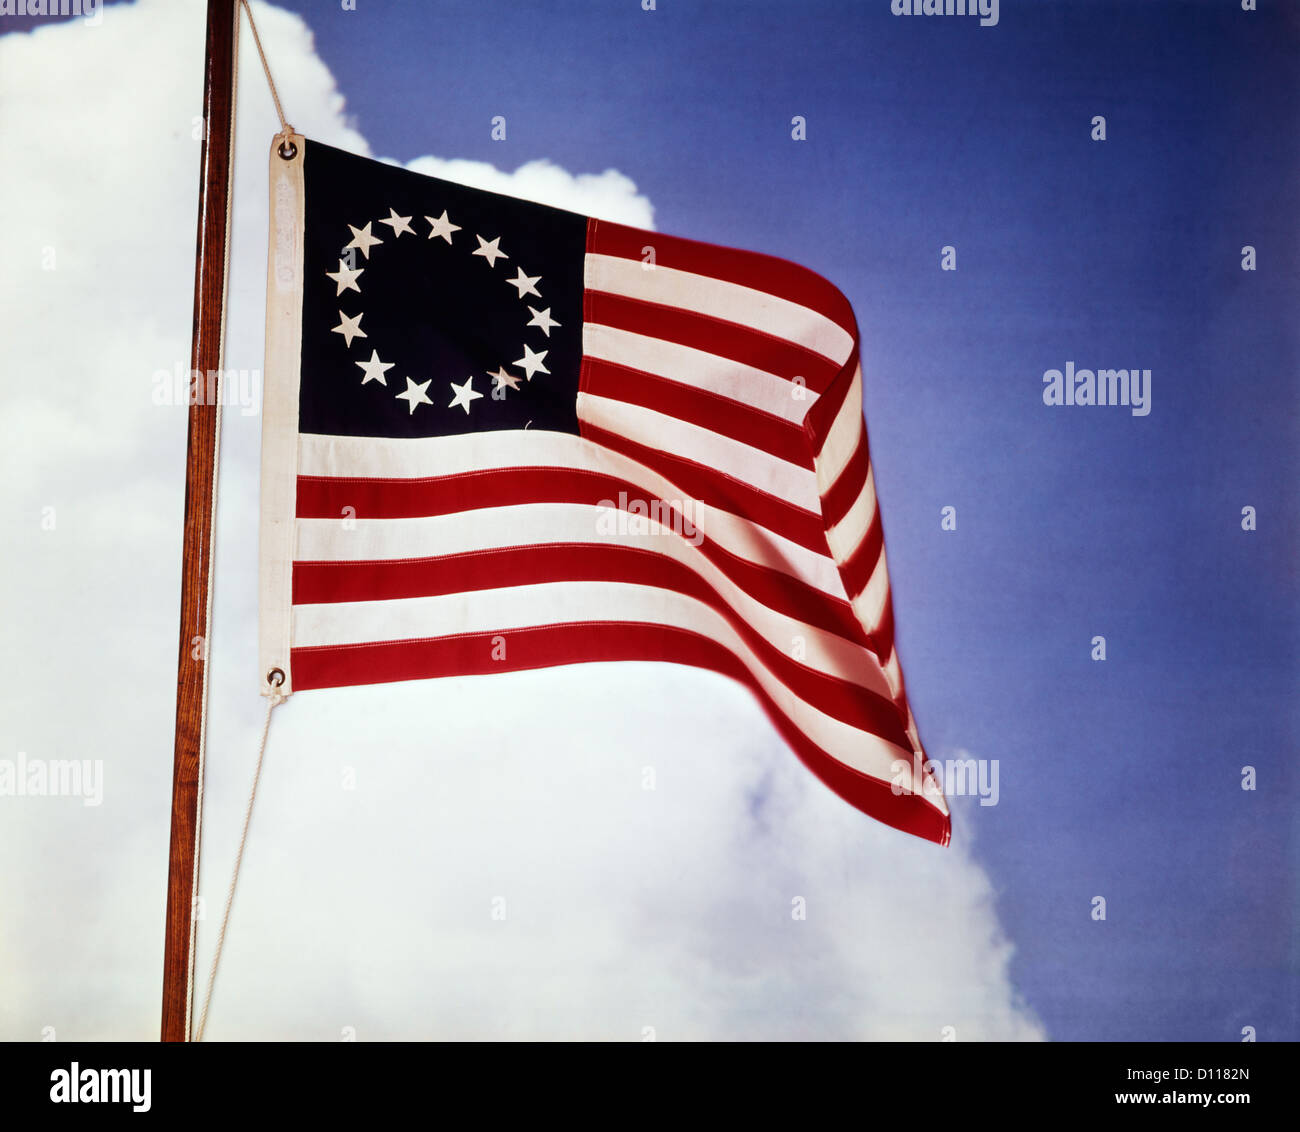 Années 1700 Années 1770 drapeau américain avec 13 étoiles REPRÉSENTANT LES COLONIES DE LA RÉVOLUTION COLONIALE 1776 Banque D'Images